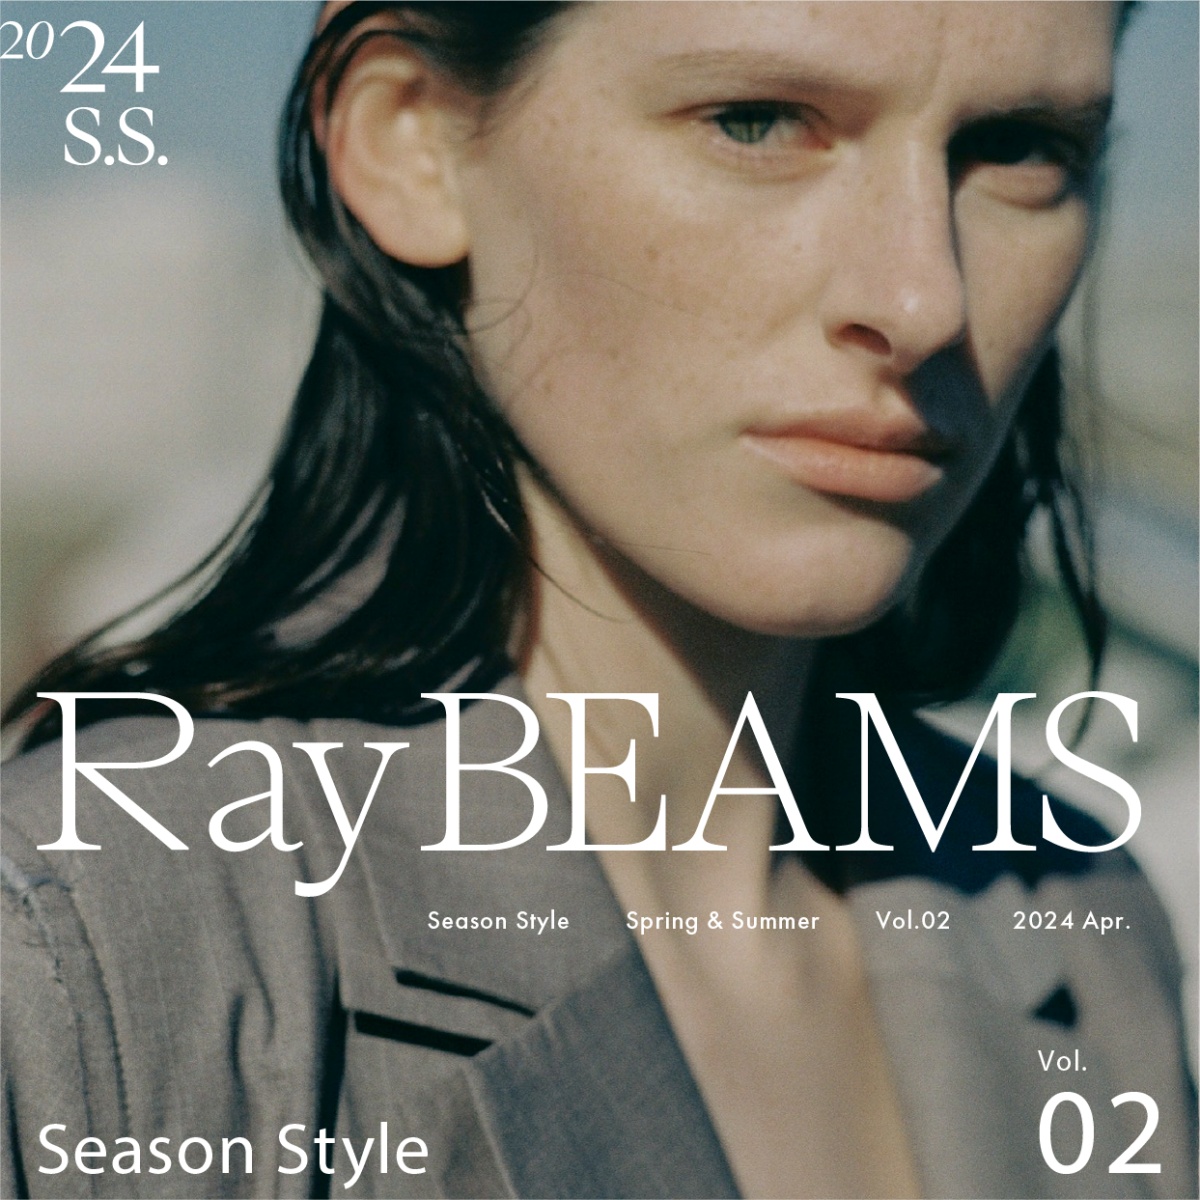 不隨著時代潮流而變動 以輕盈的姿態 保持自律｜Ray BEAMS 2024 Spring & Summer Season Style vol.2